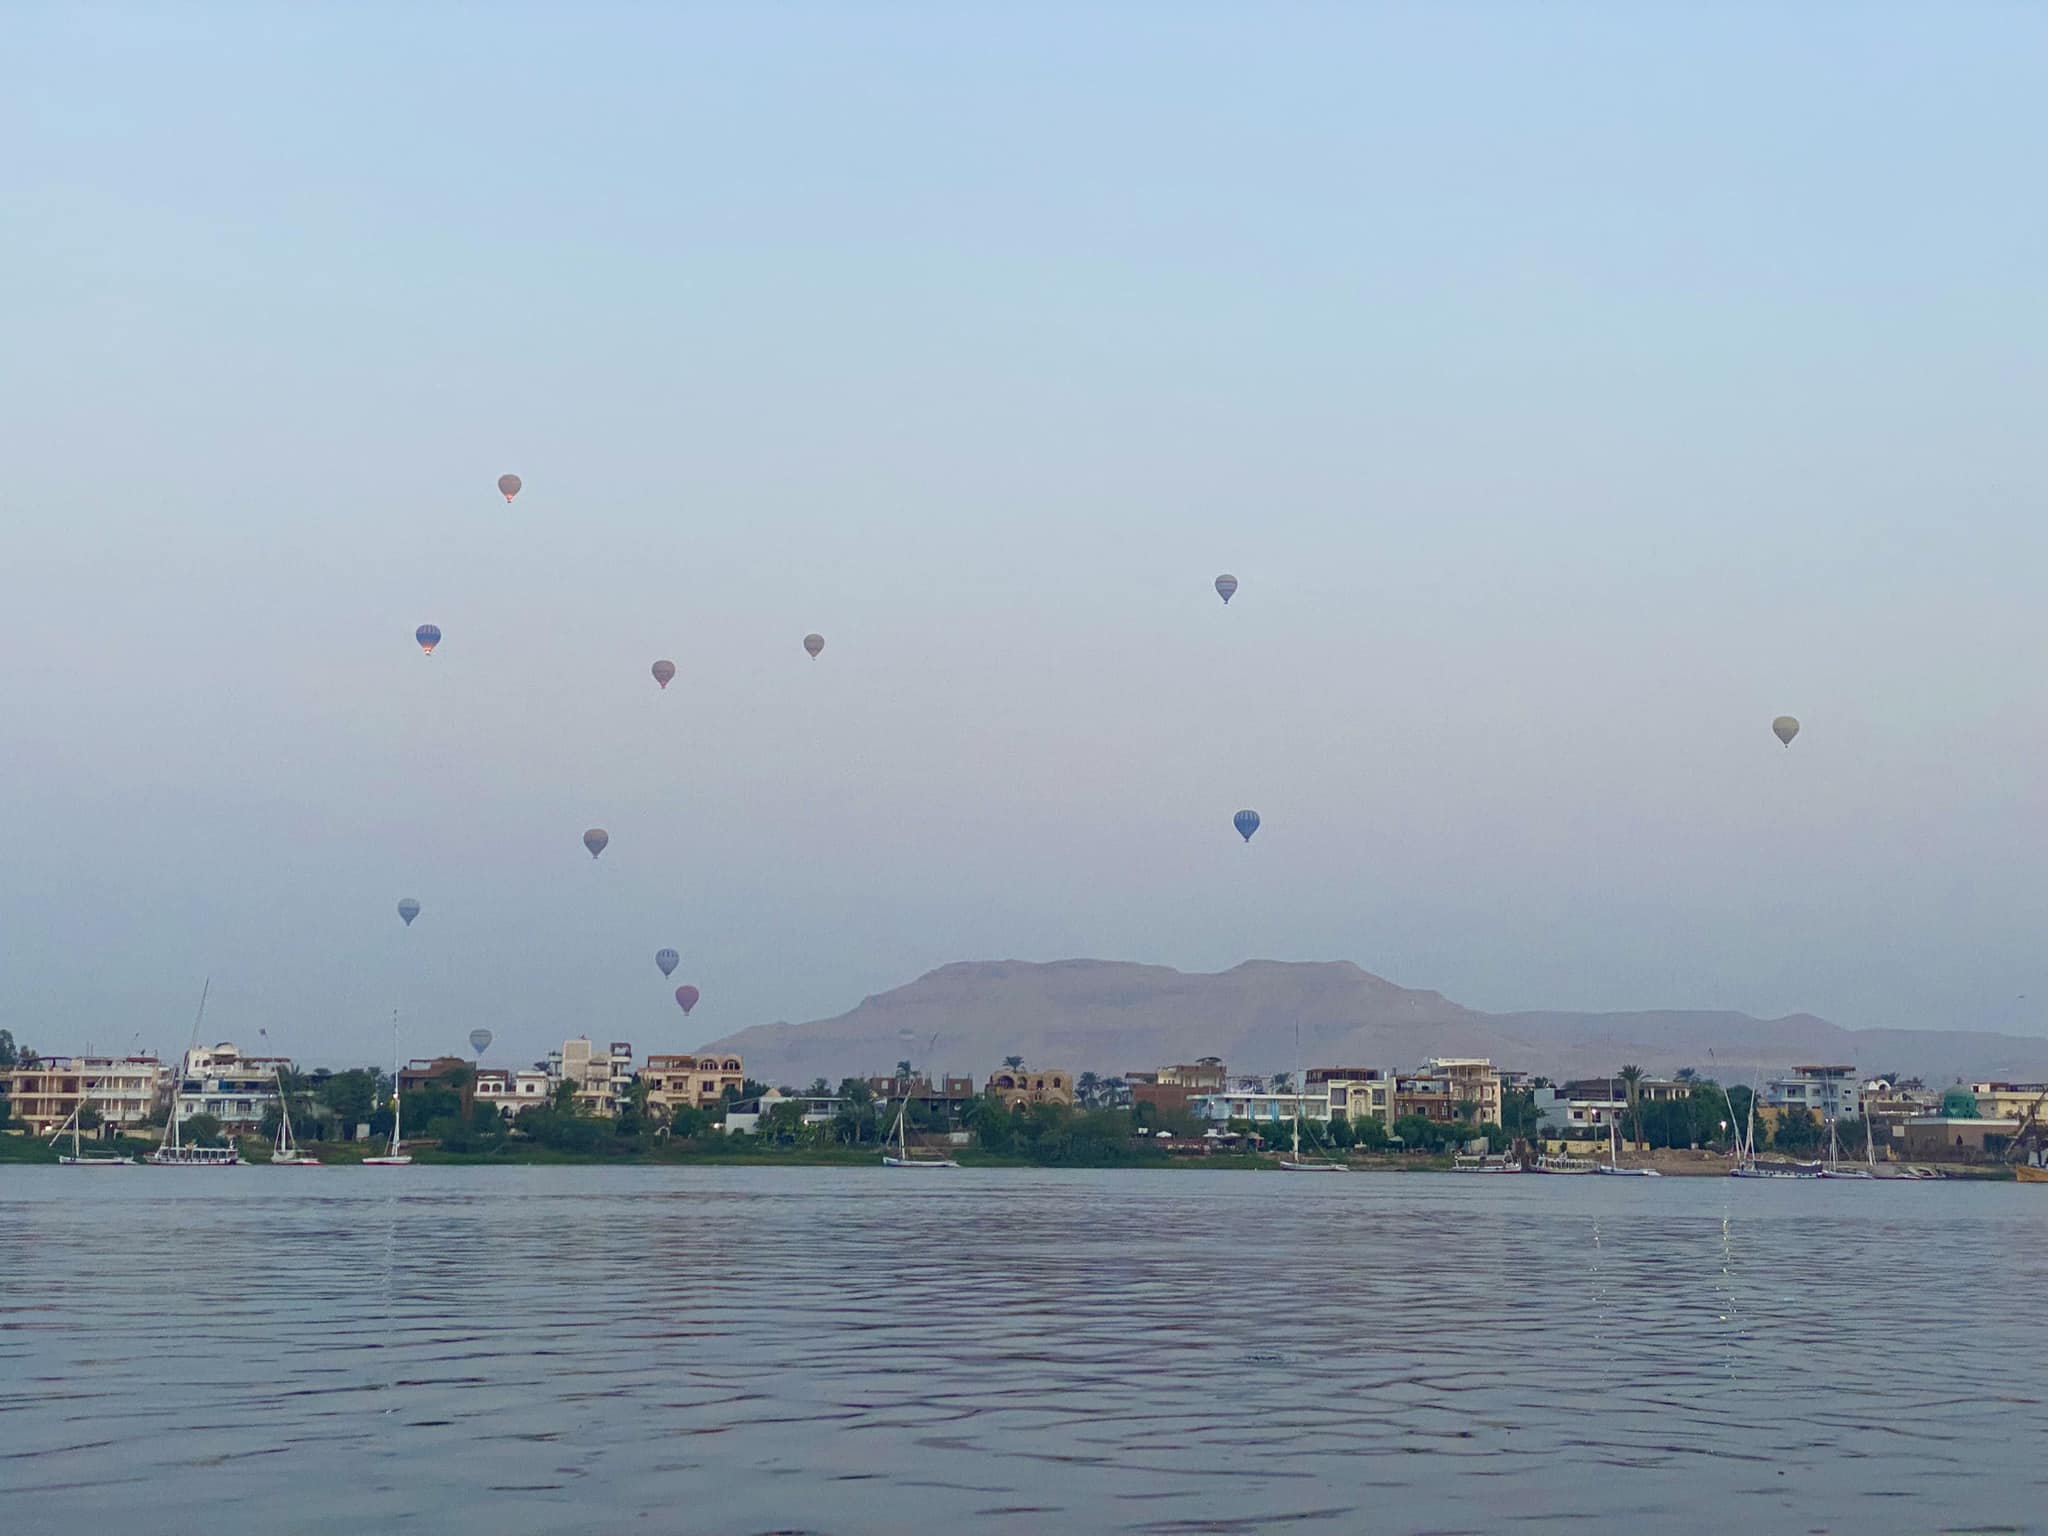 البالونات تزين سماء الأقصر فى عيدها القومى